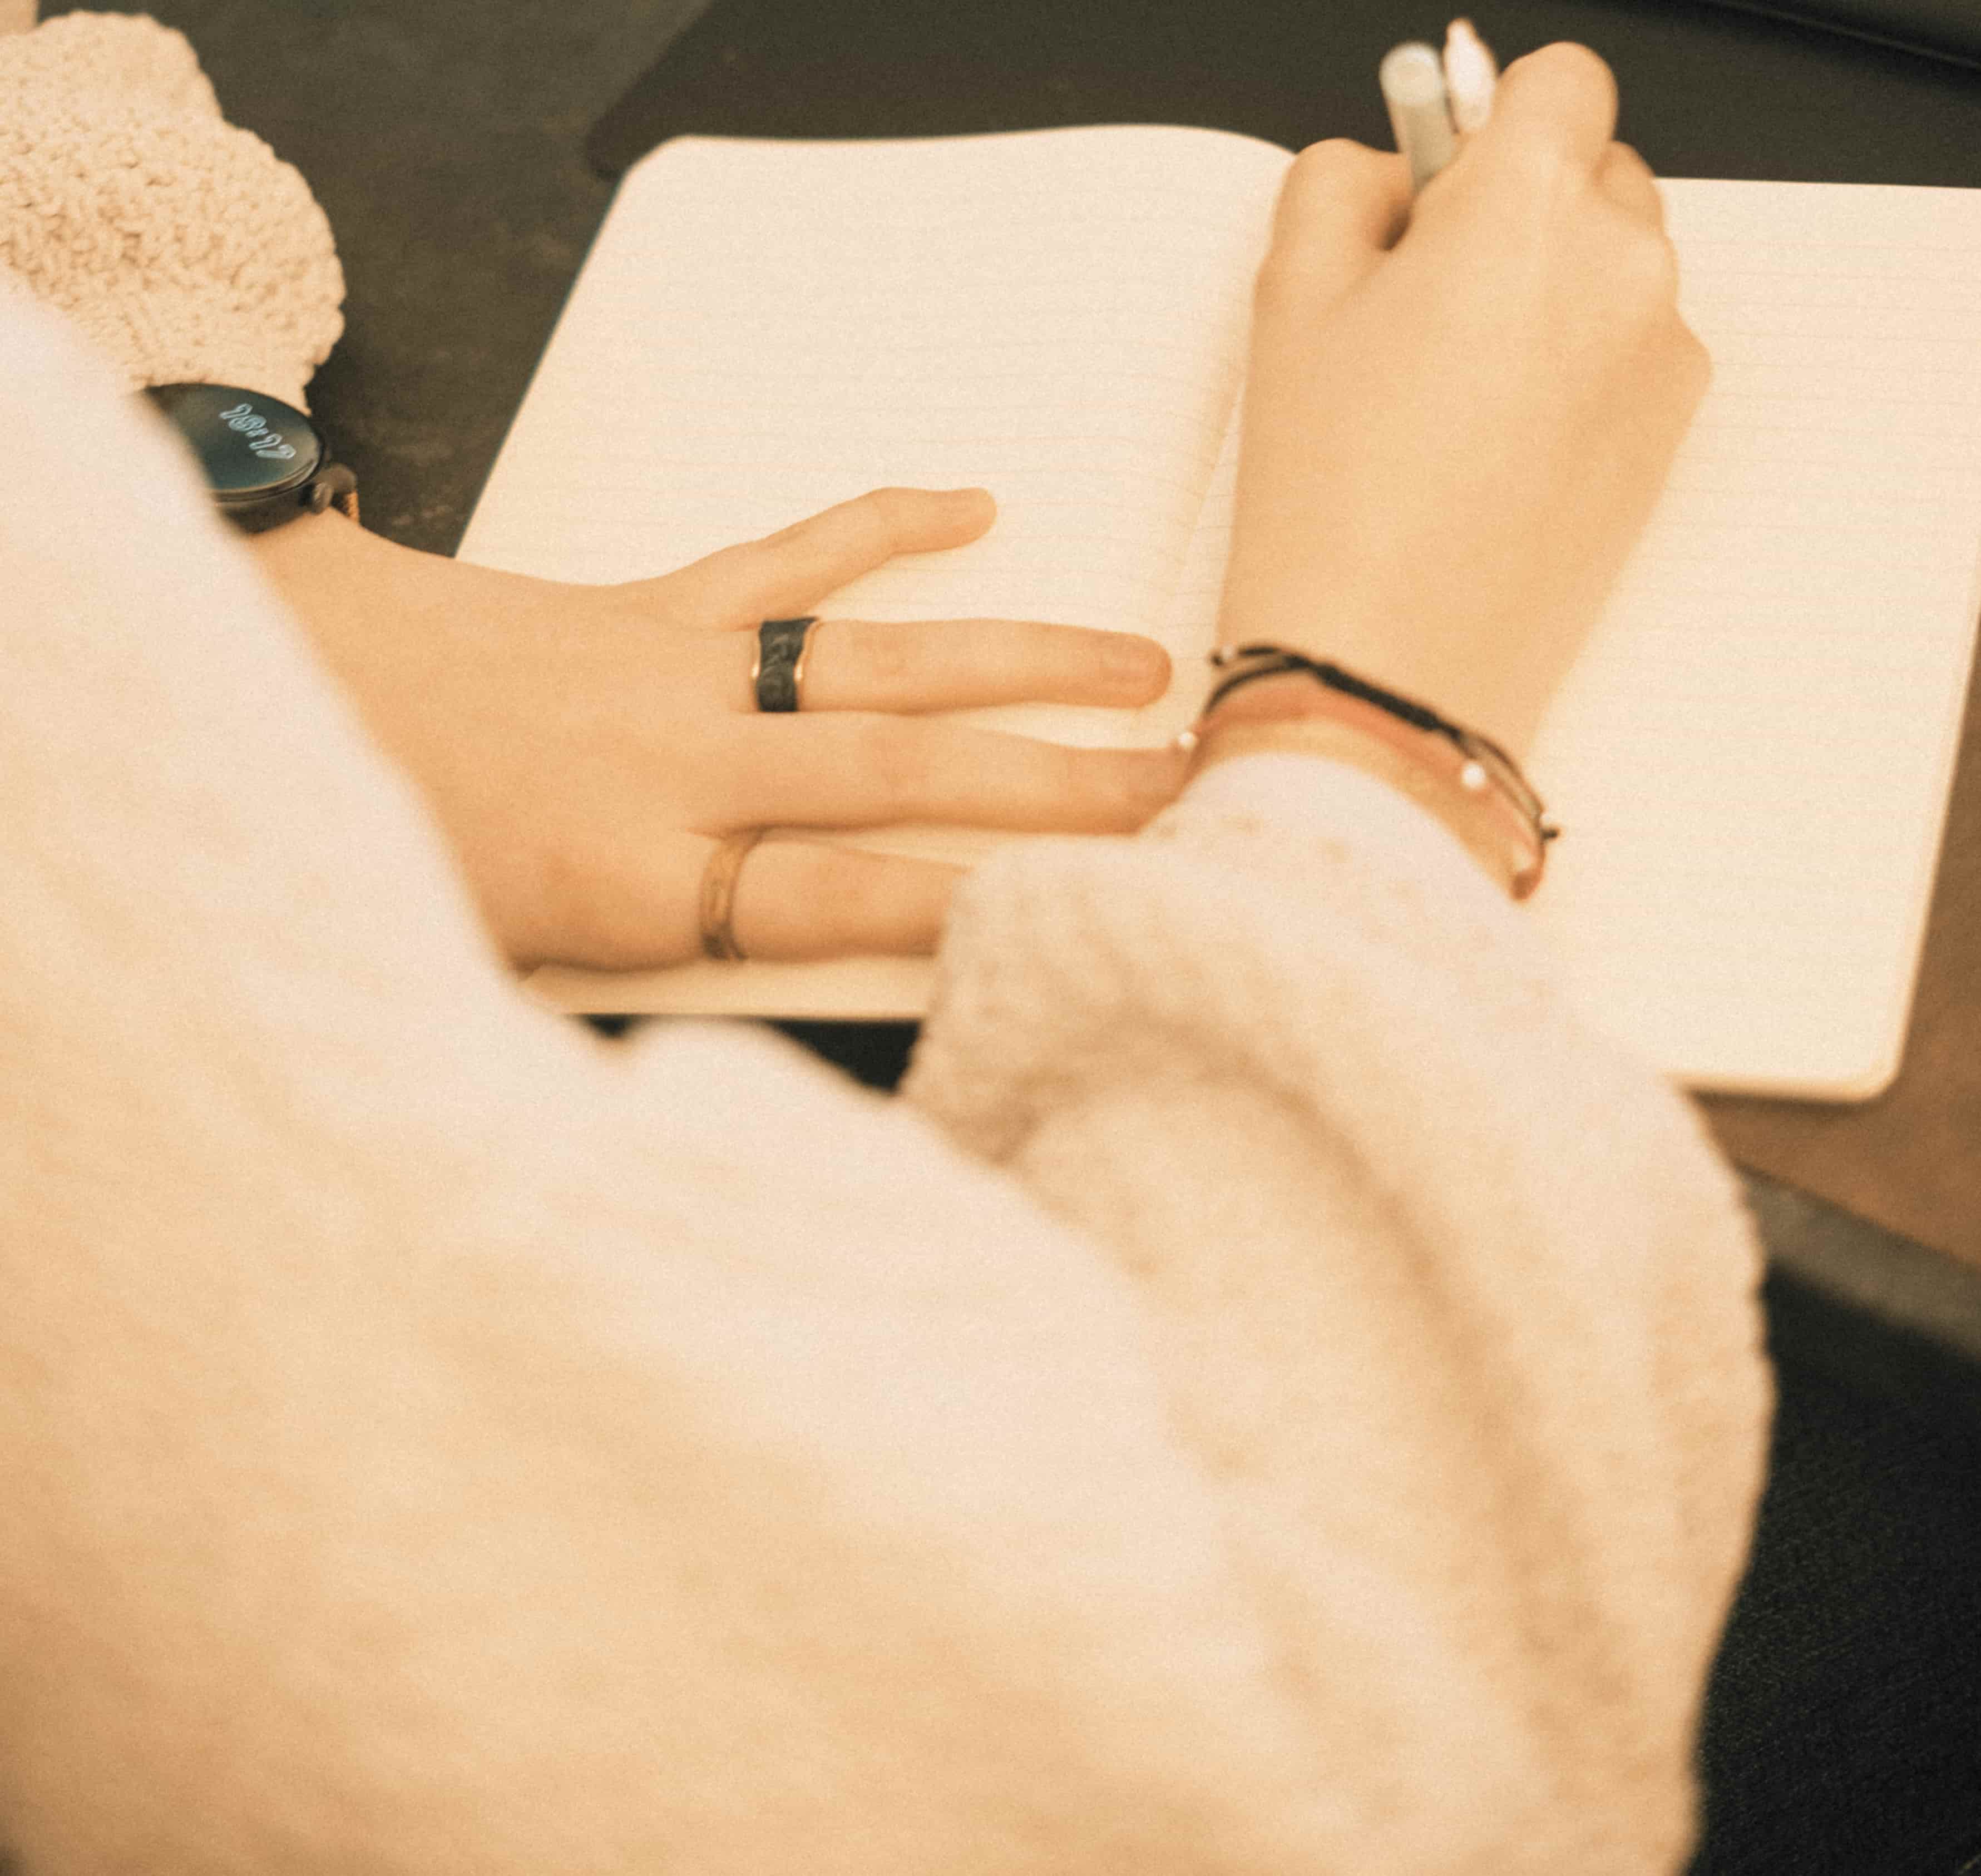 Una mano de mujer escribe en una agenda mientras apoya la otra mano sobre el papel